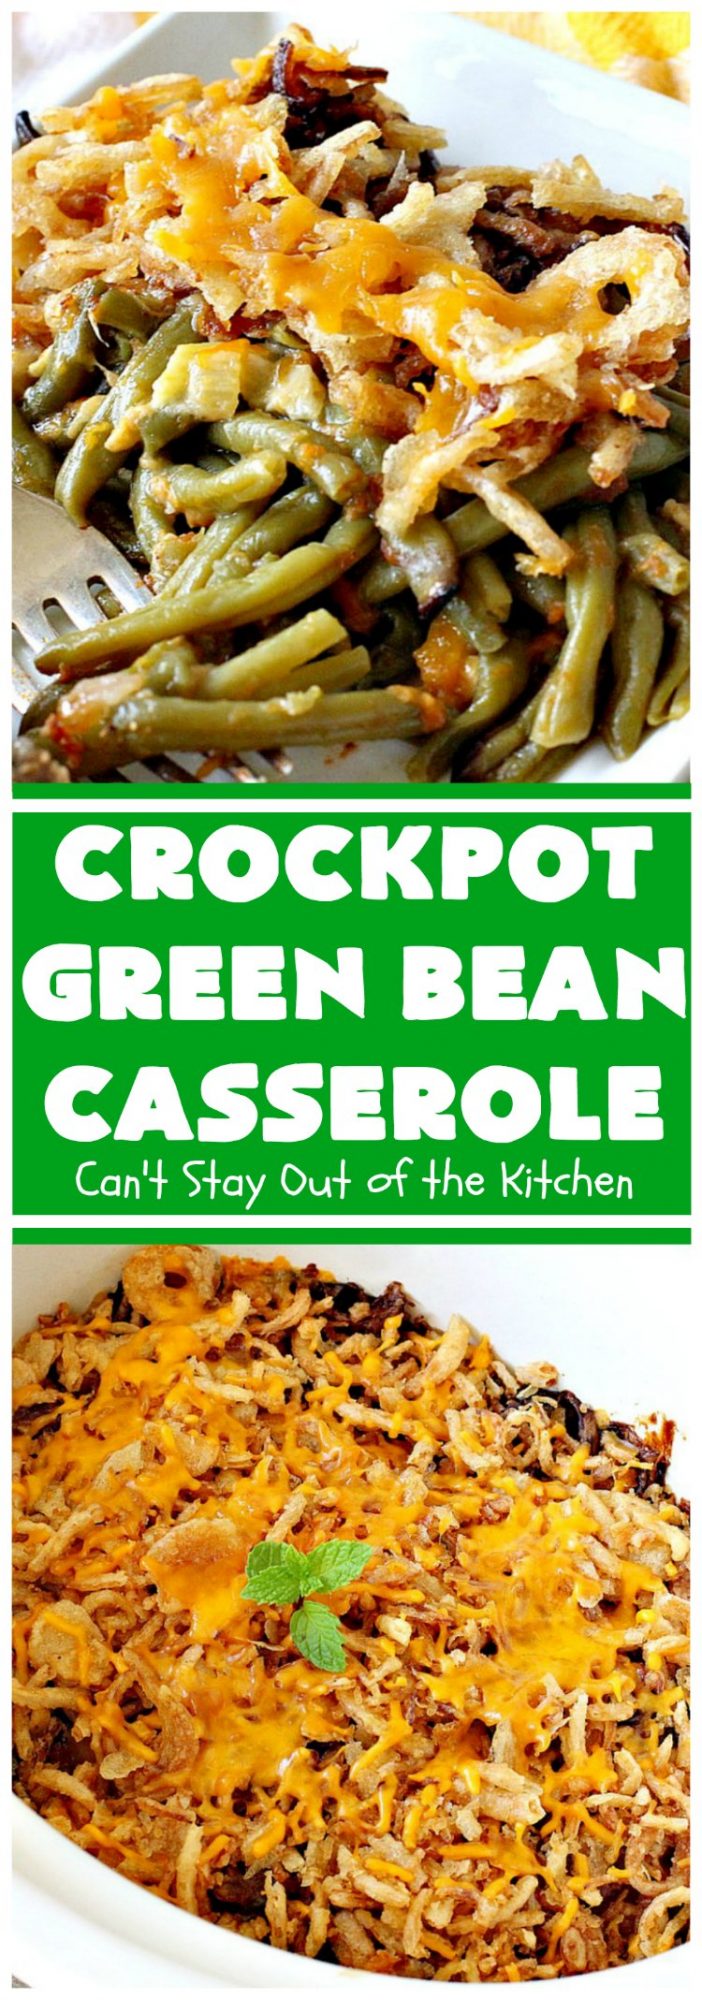 crockpot green bean casserole from scratch